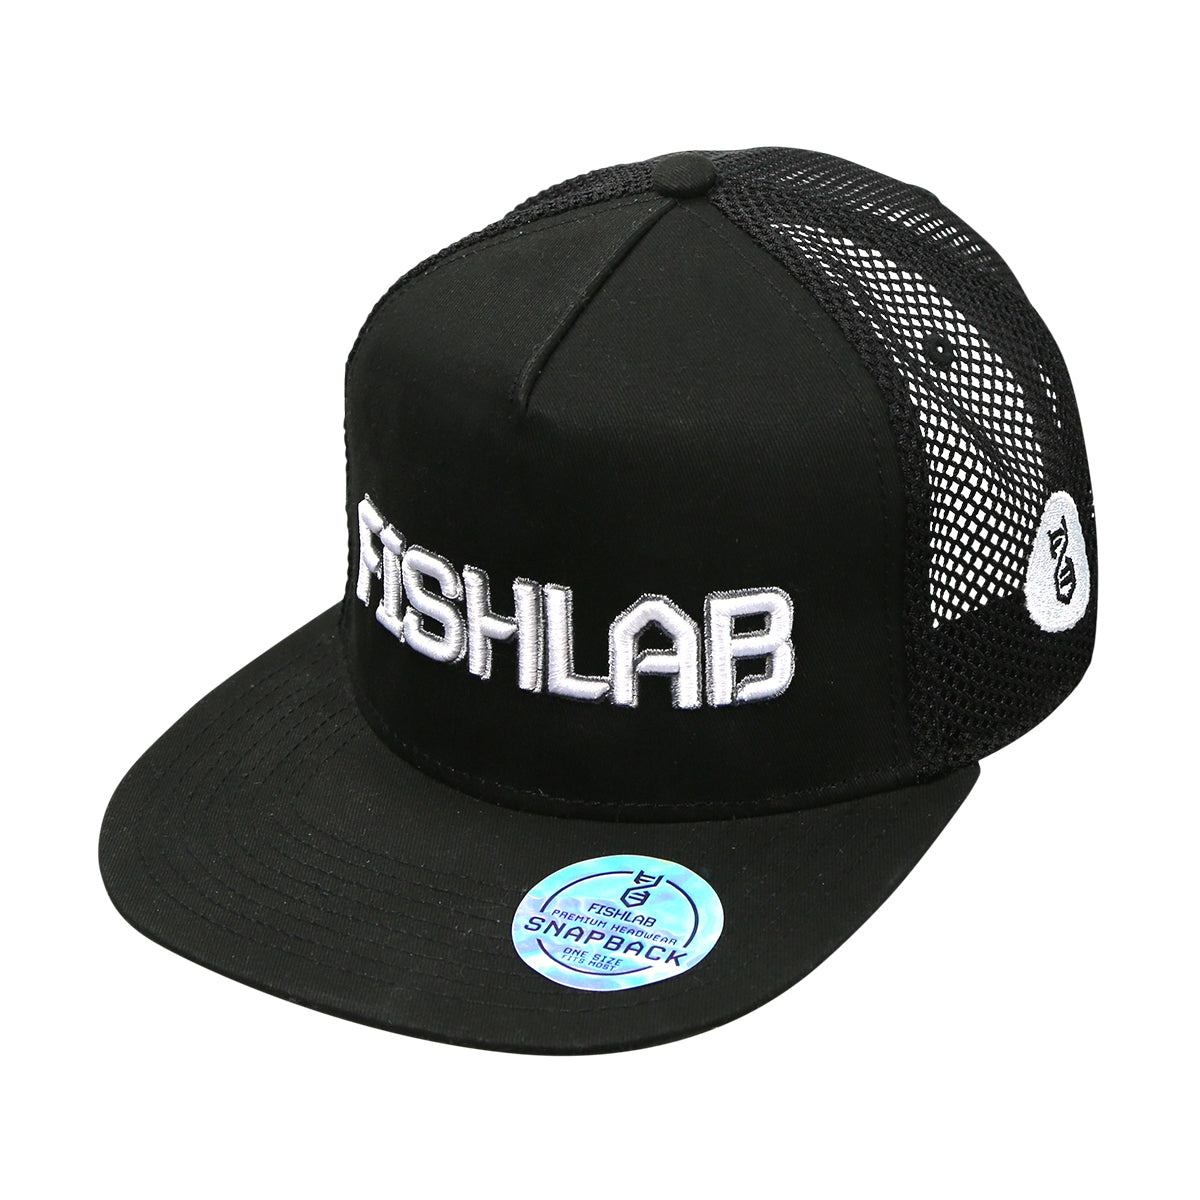 FishLab Trucker Mesh Hat